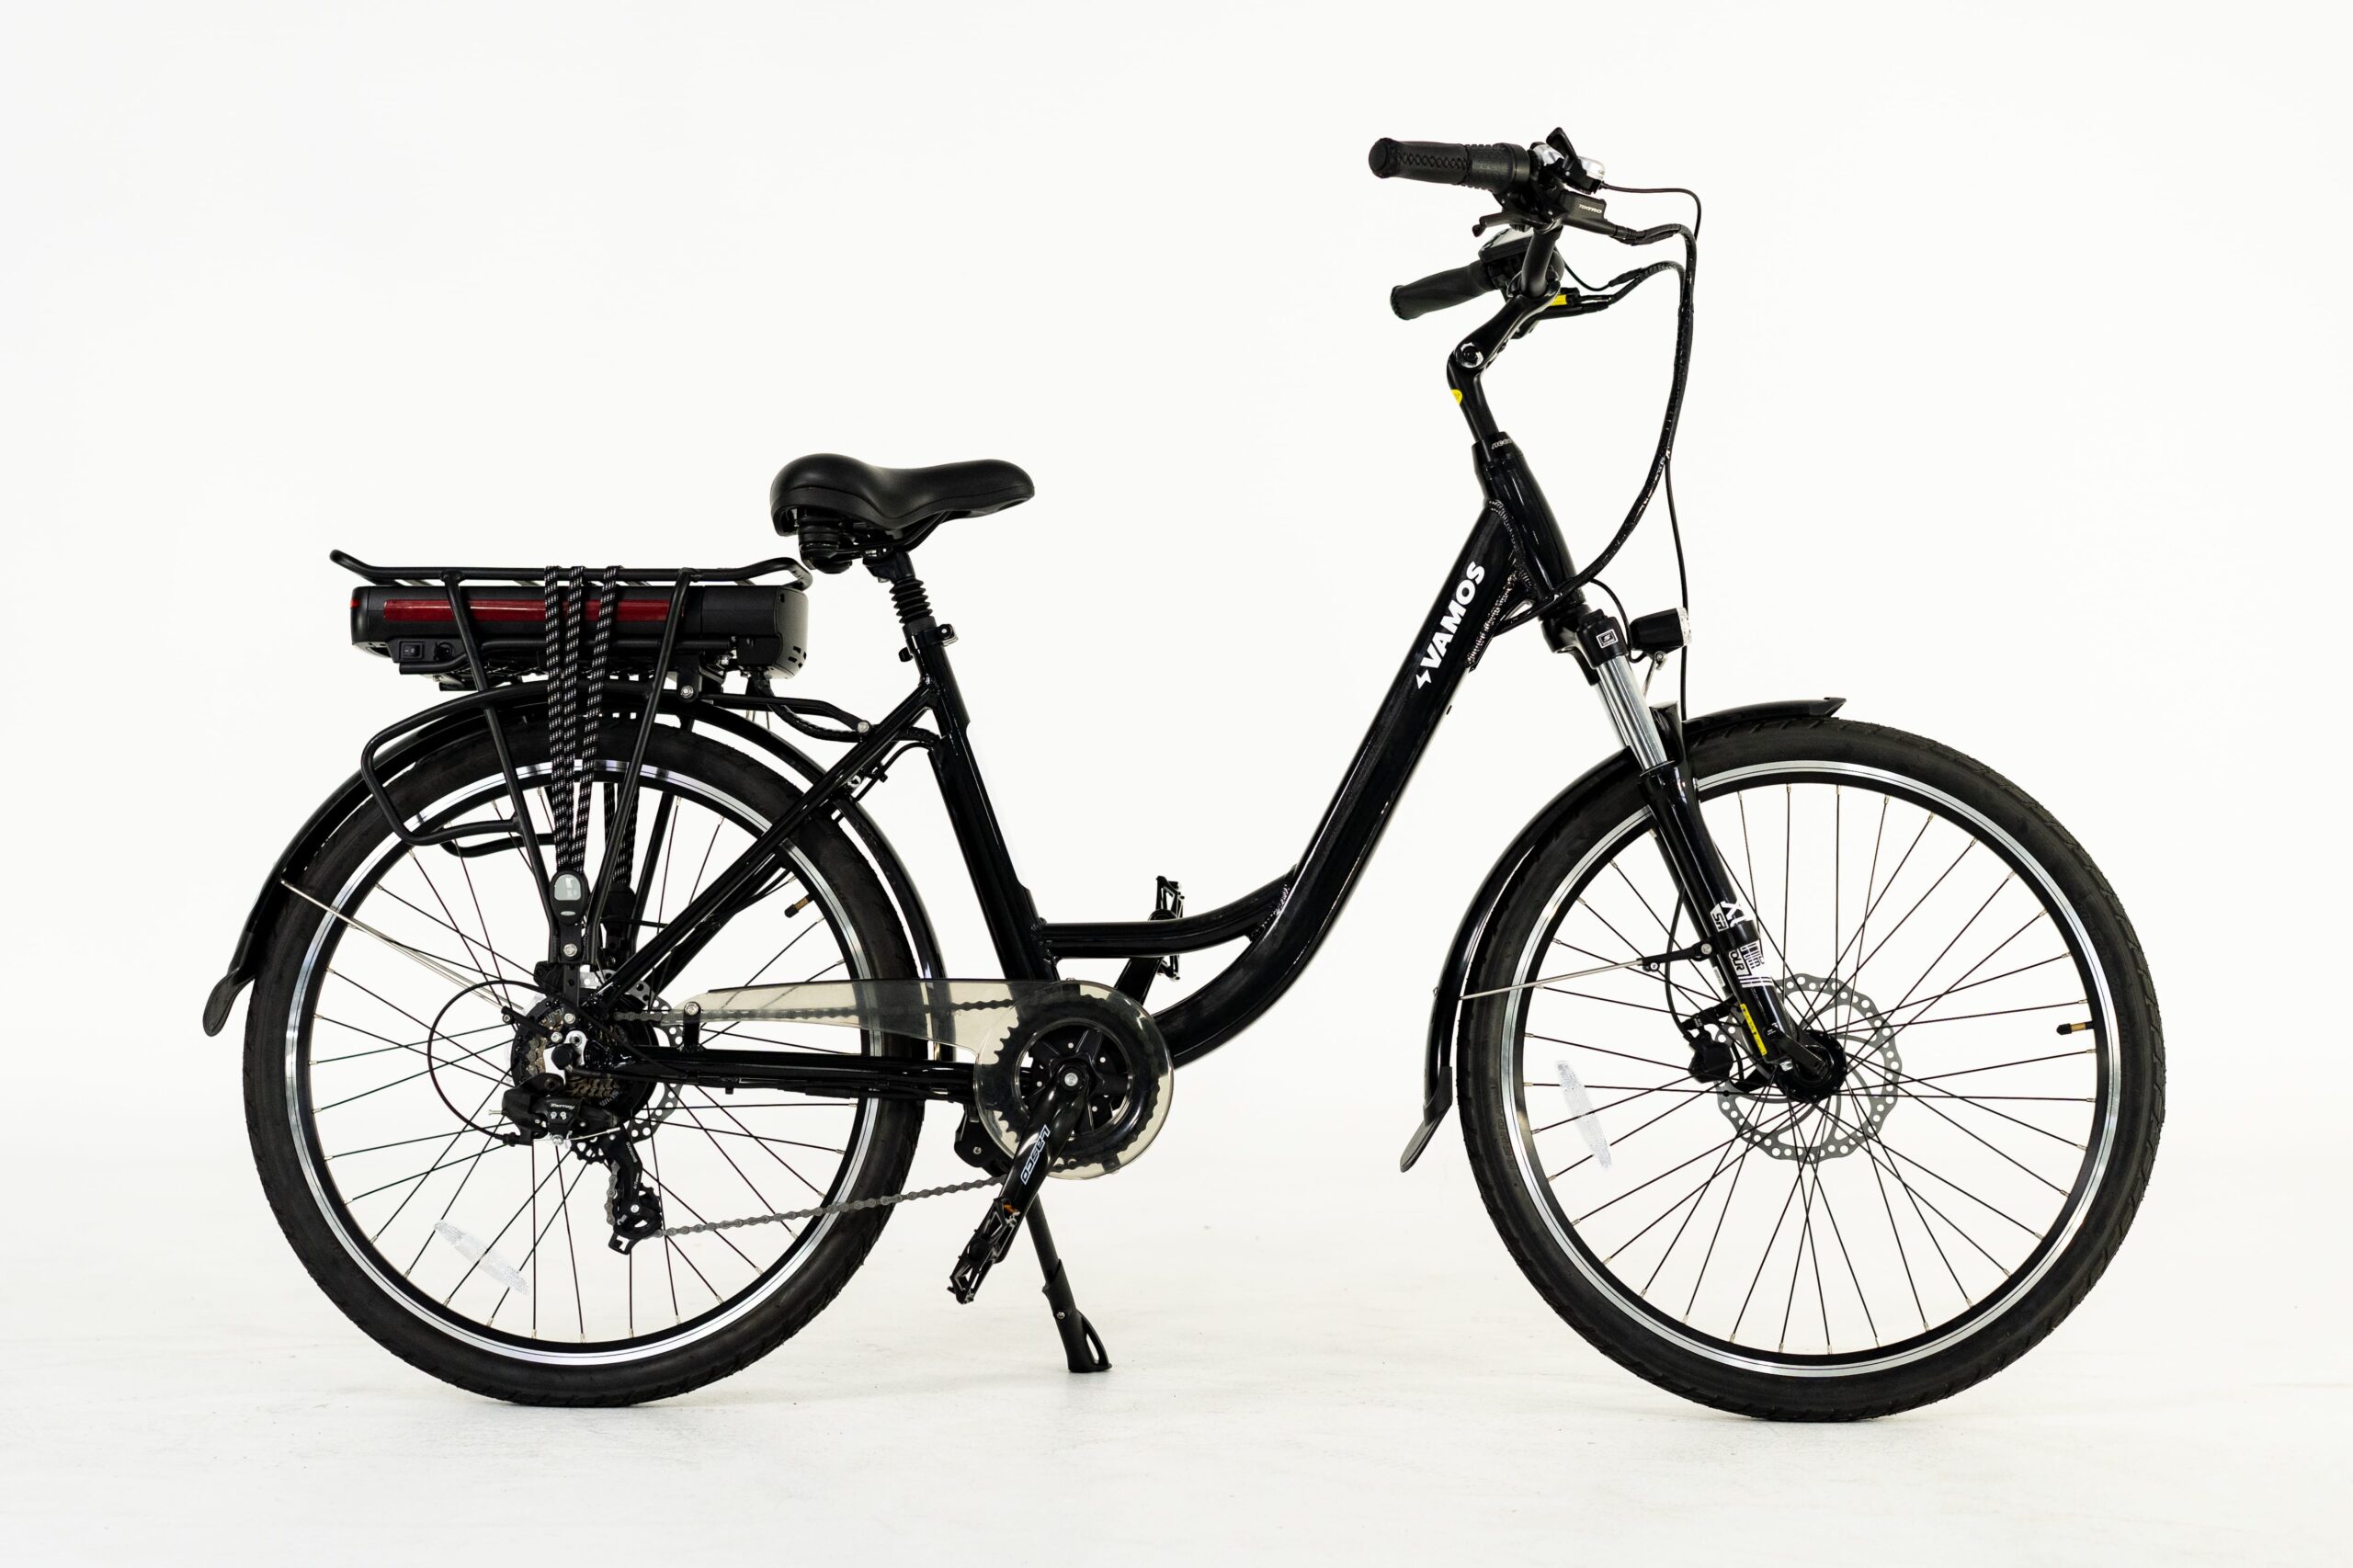 Bikemore electric bike perth - Vamos - El Rapido 13